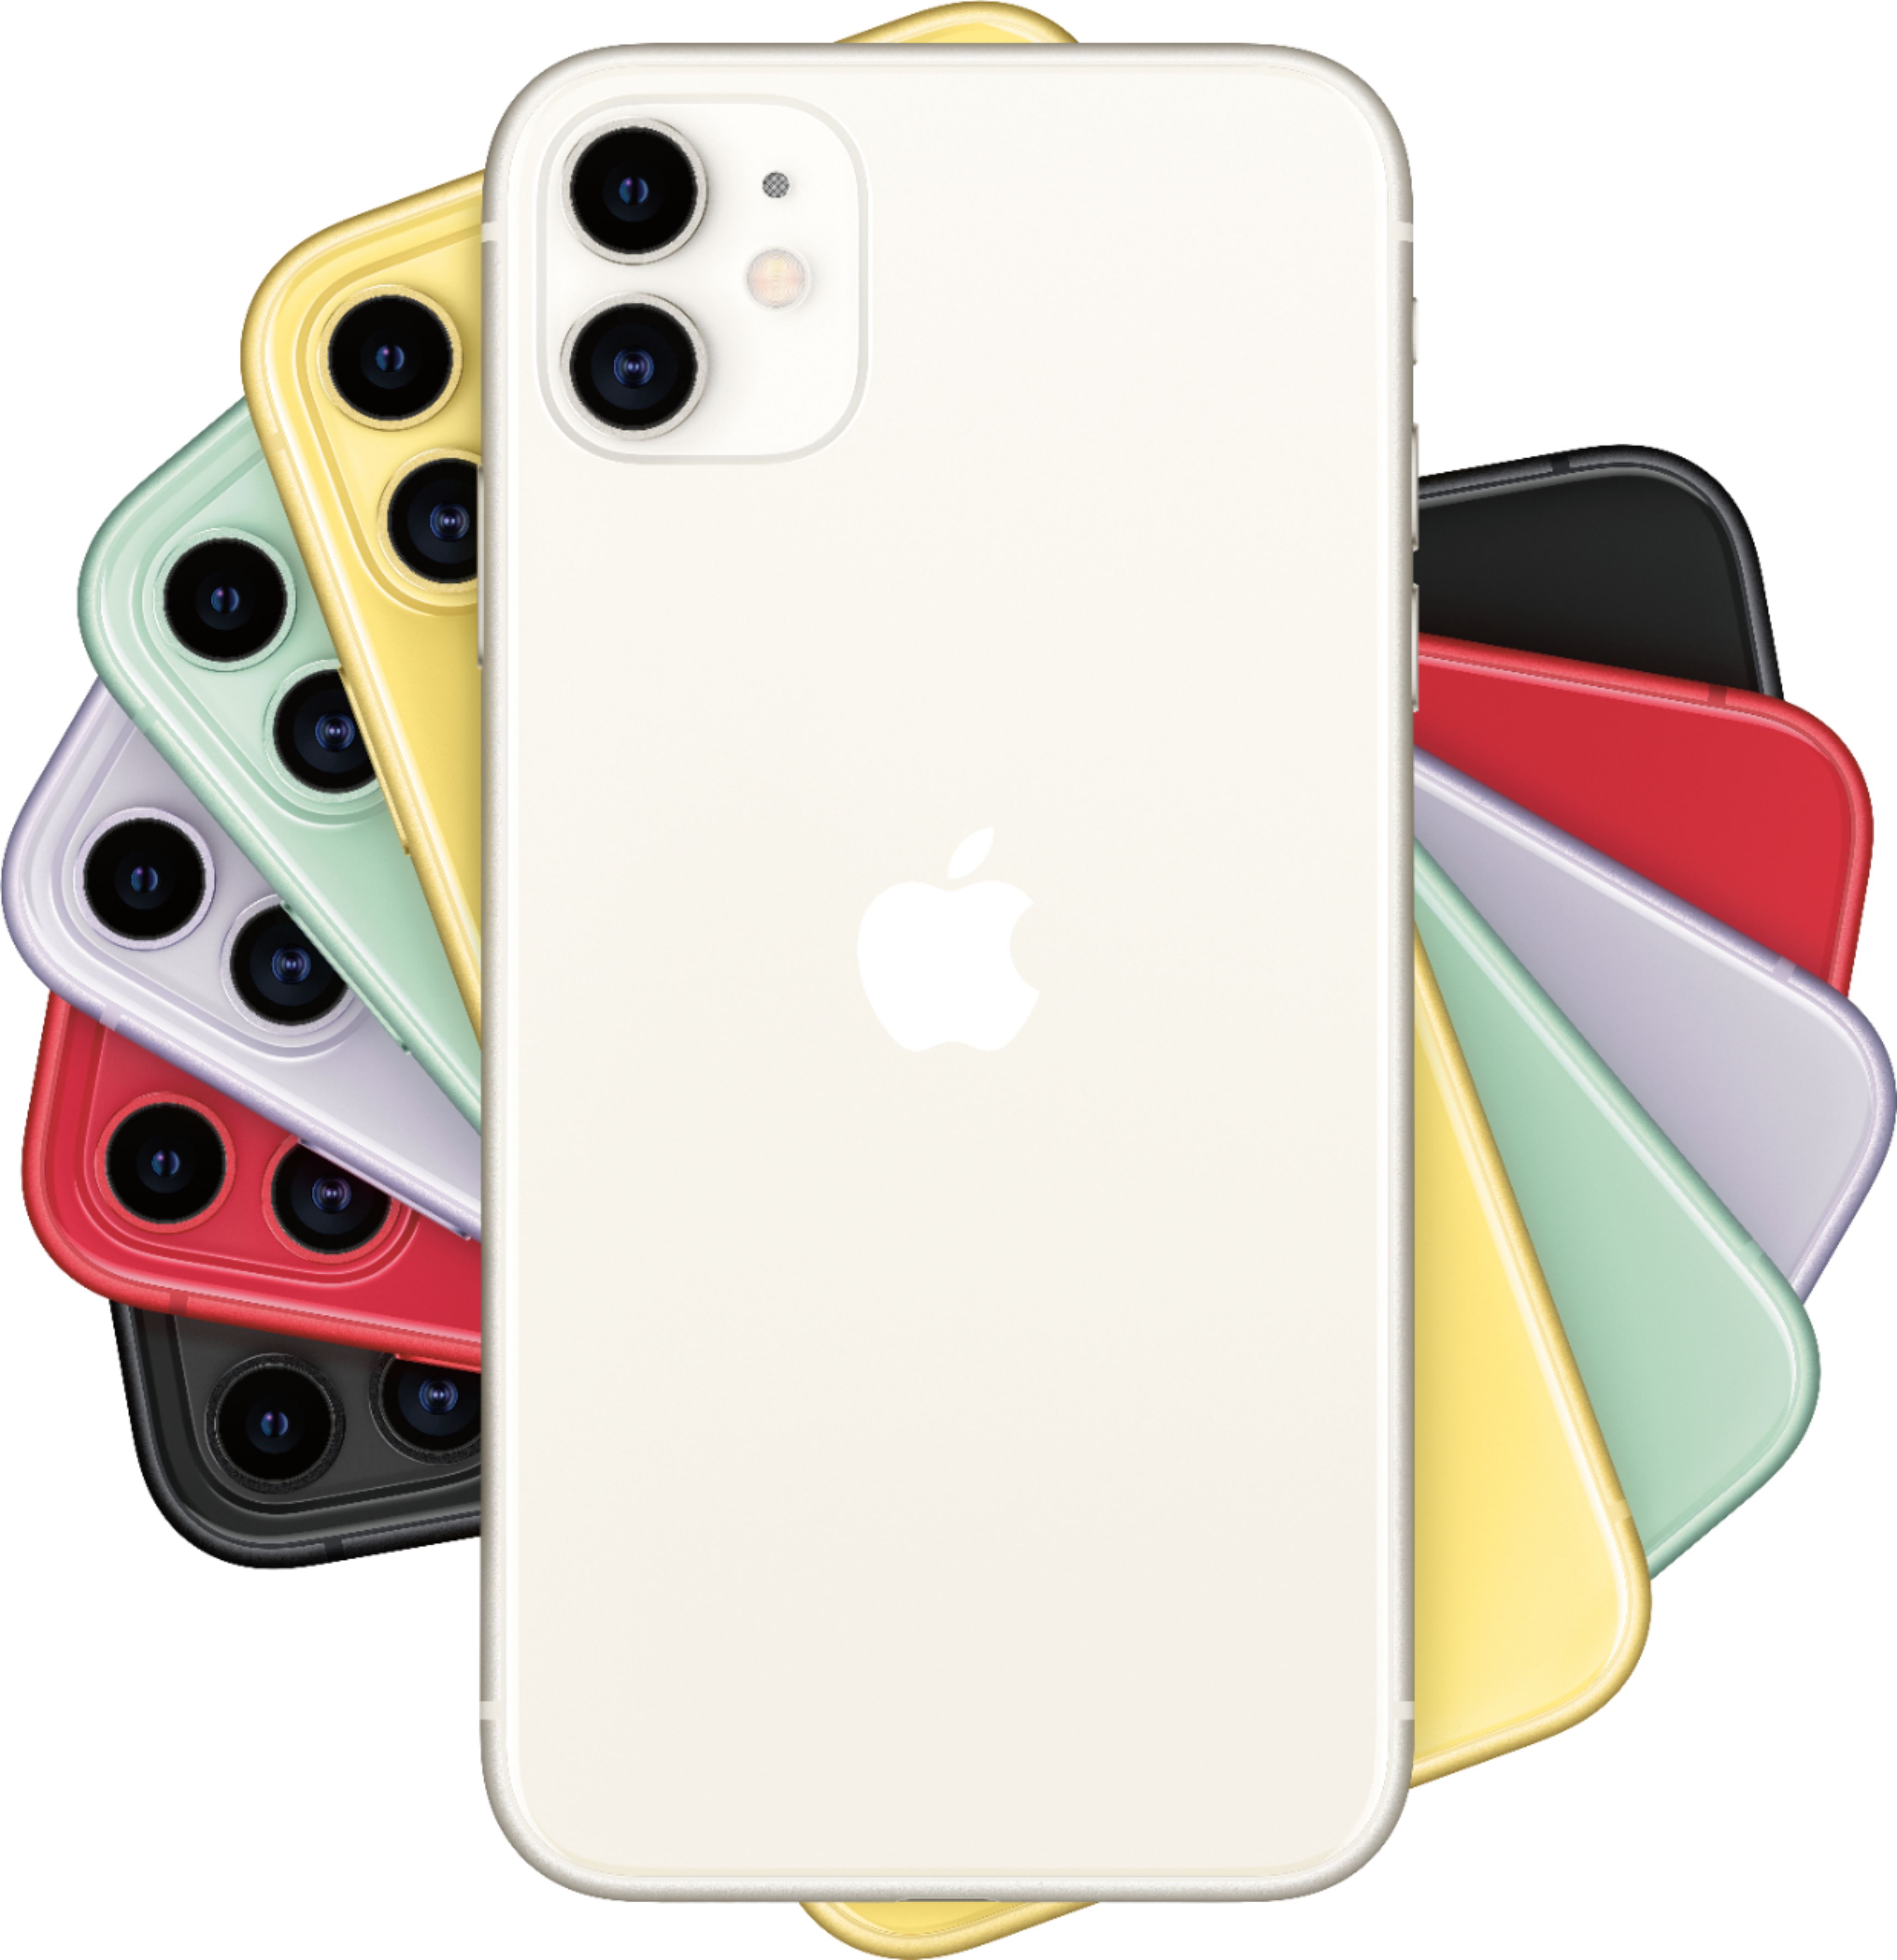 【送料関税無料】 iPhone11 64GB White スマートフォン本体